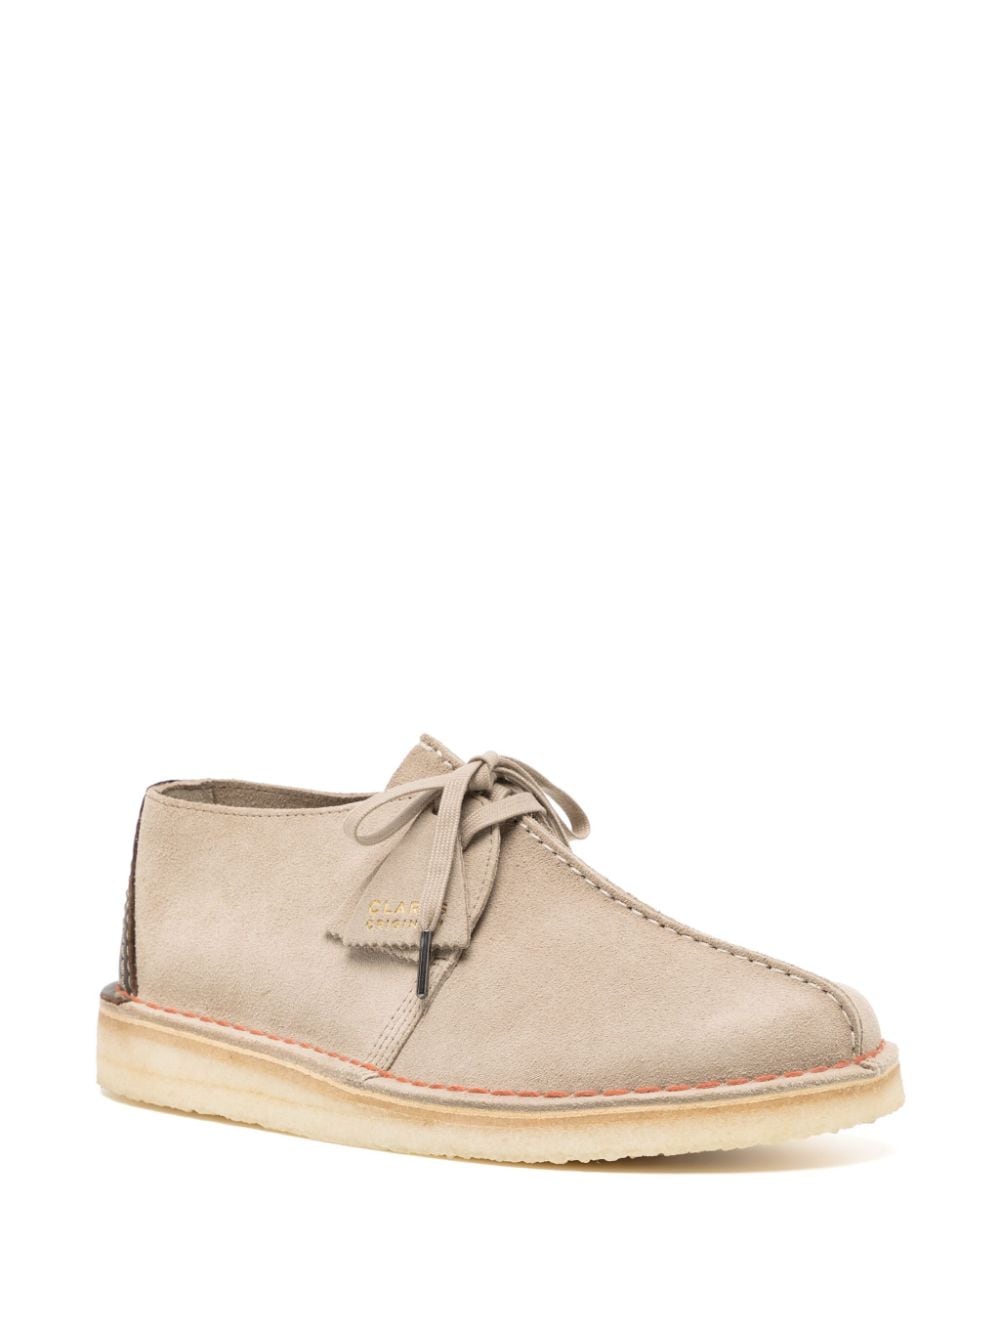 Shop Clarks Originals Desert Trek Suede Shoes In Brown